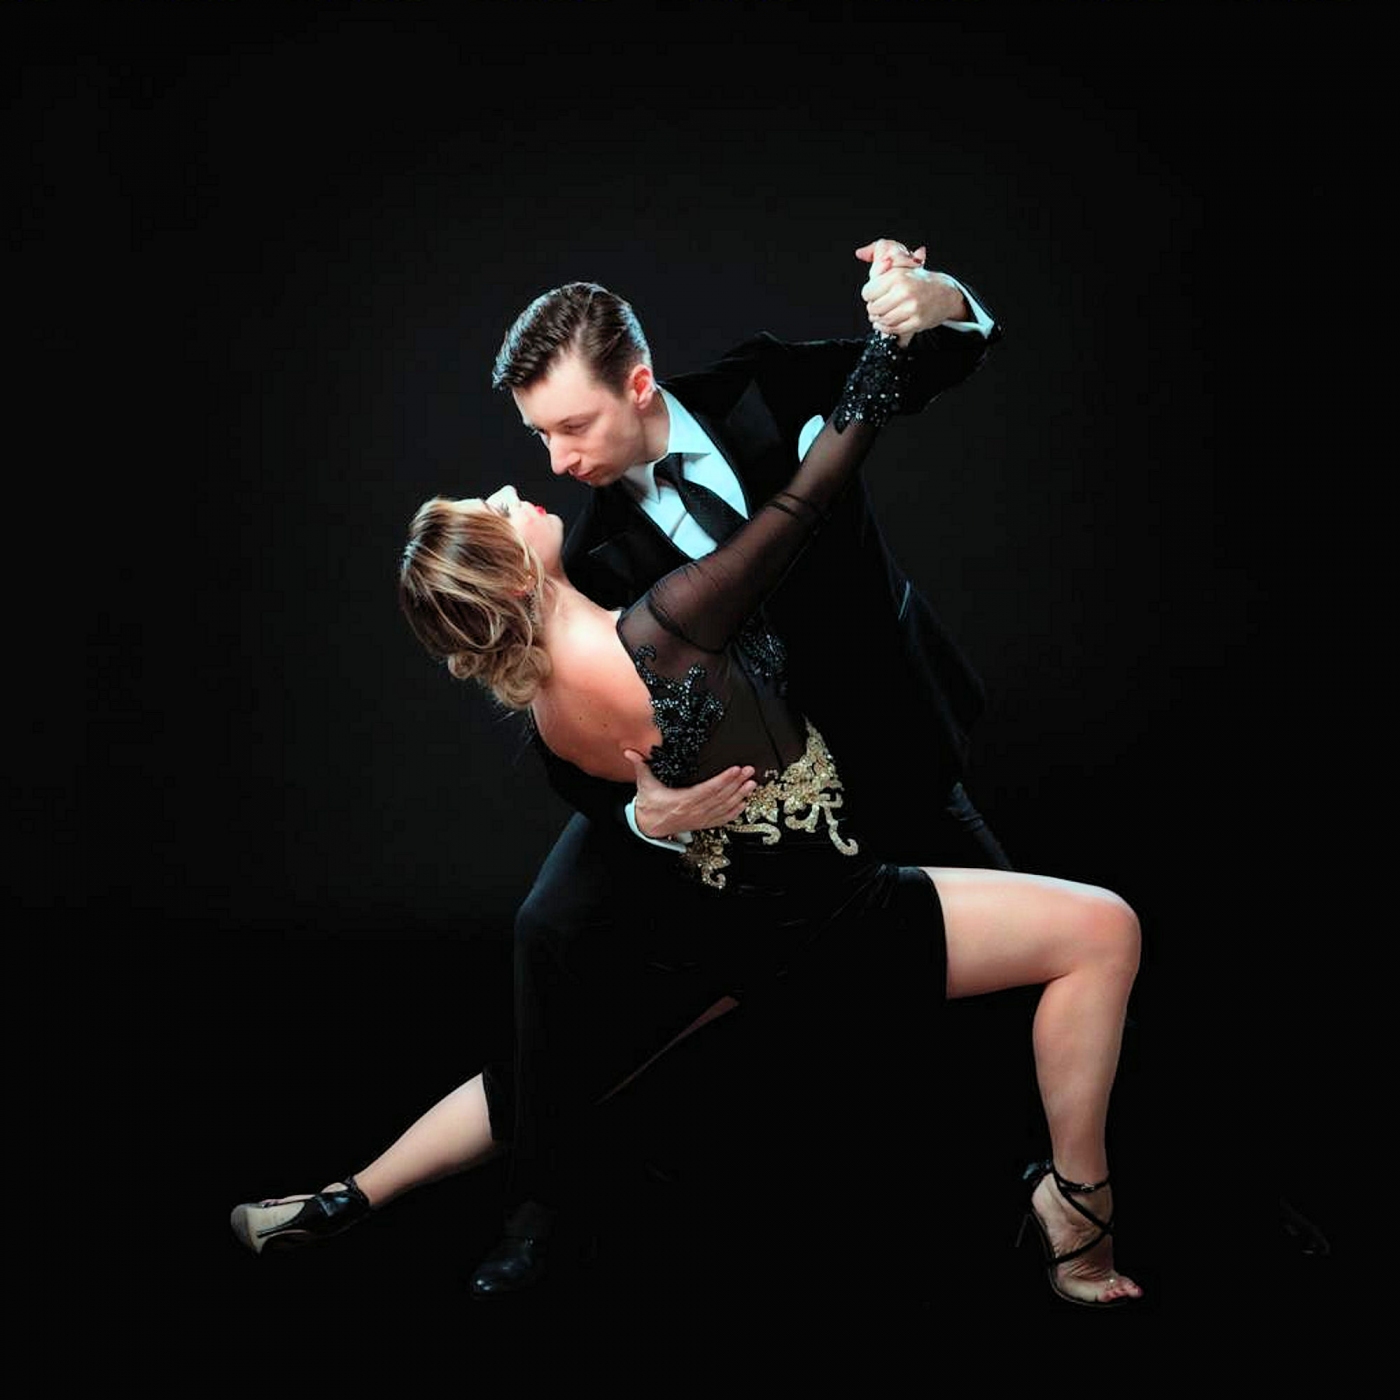 Para tańczy tango w charakterystycznej dla tego tańca pozie